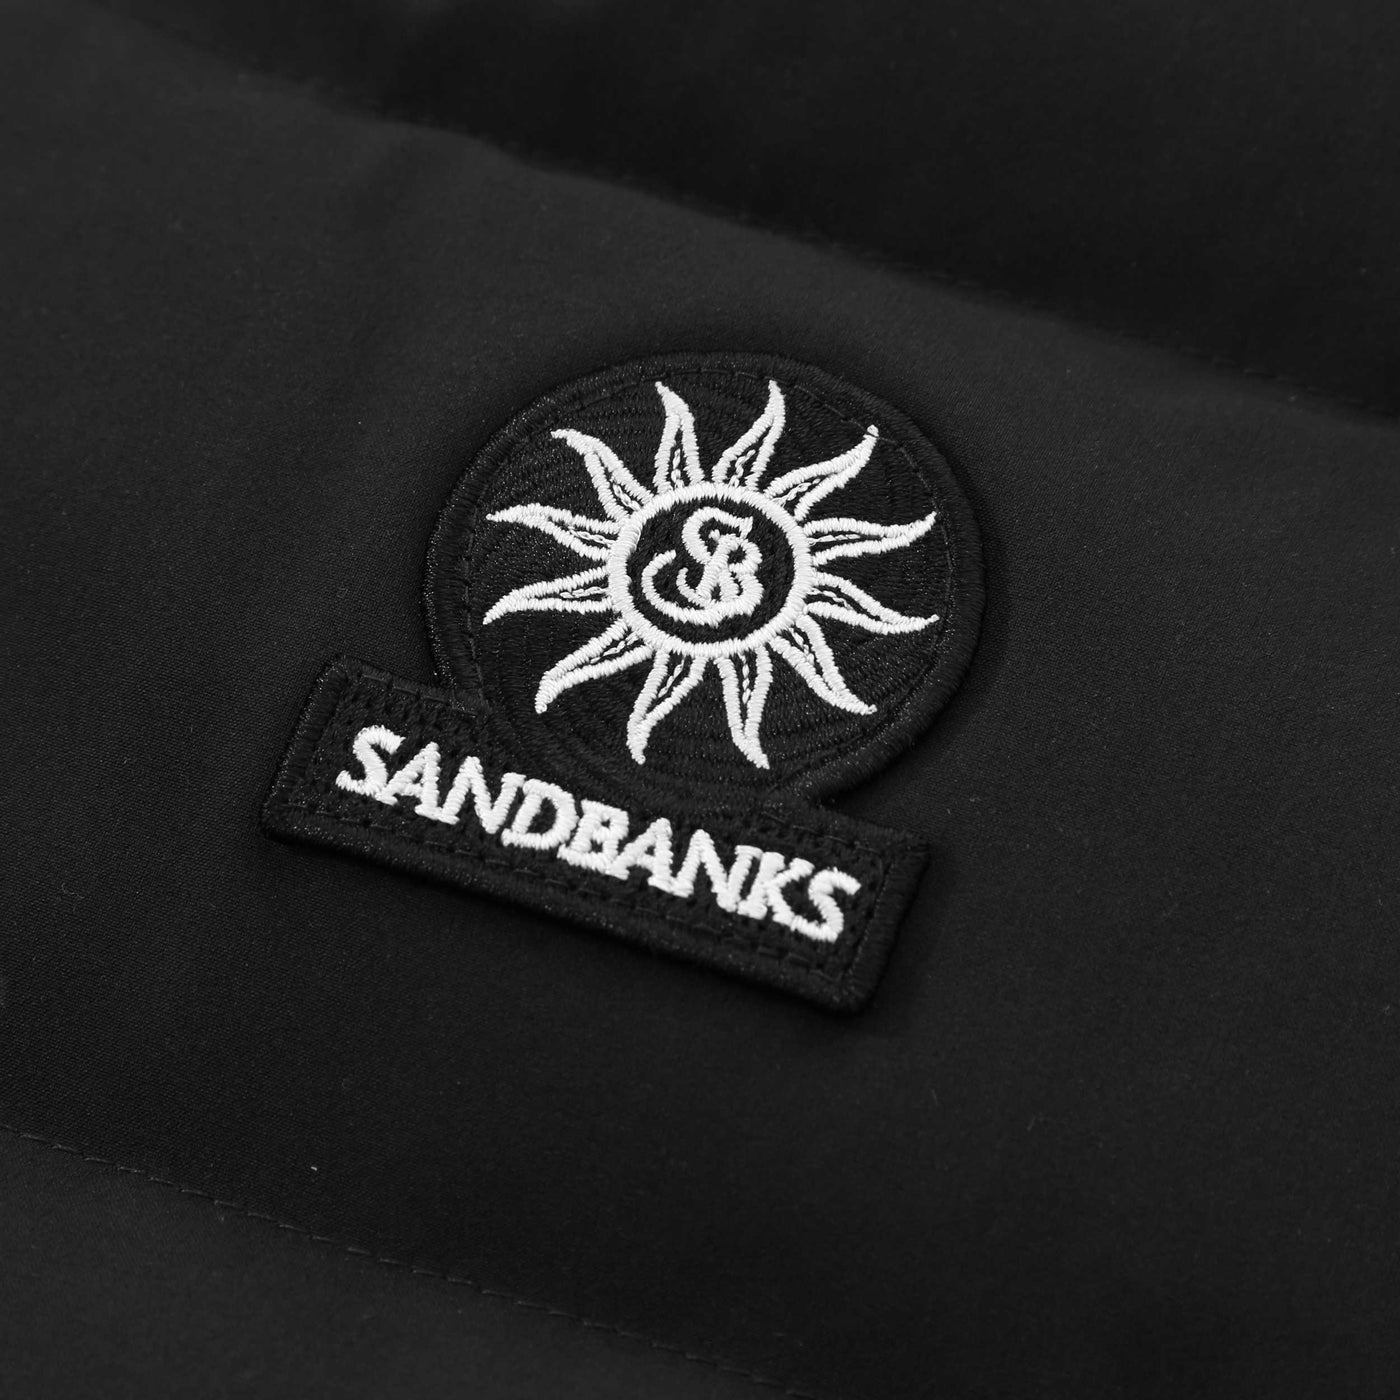 Sandbanks Explorer Gilet in Black Logo